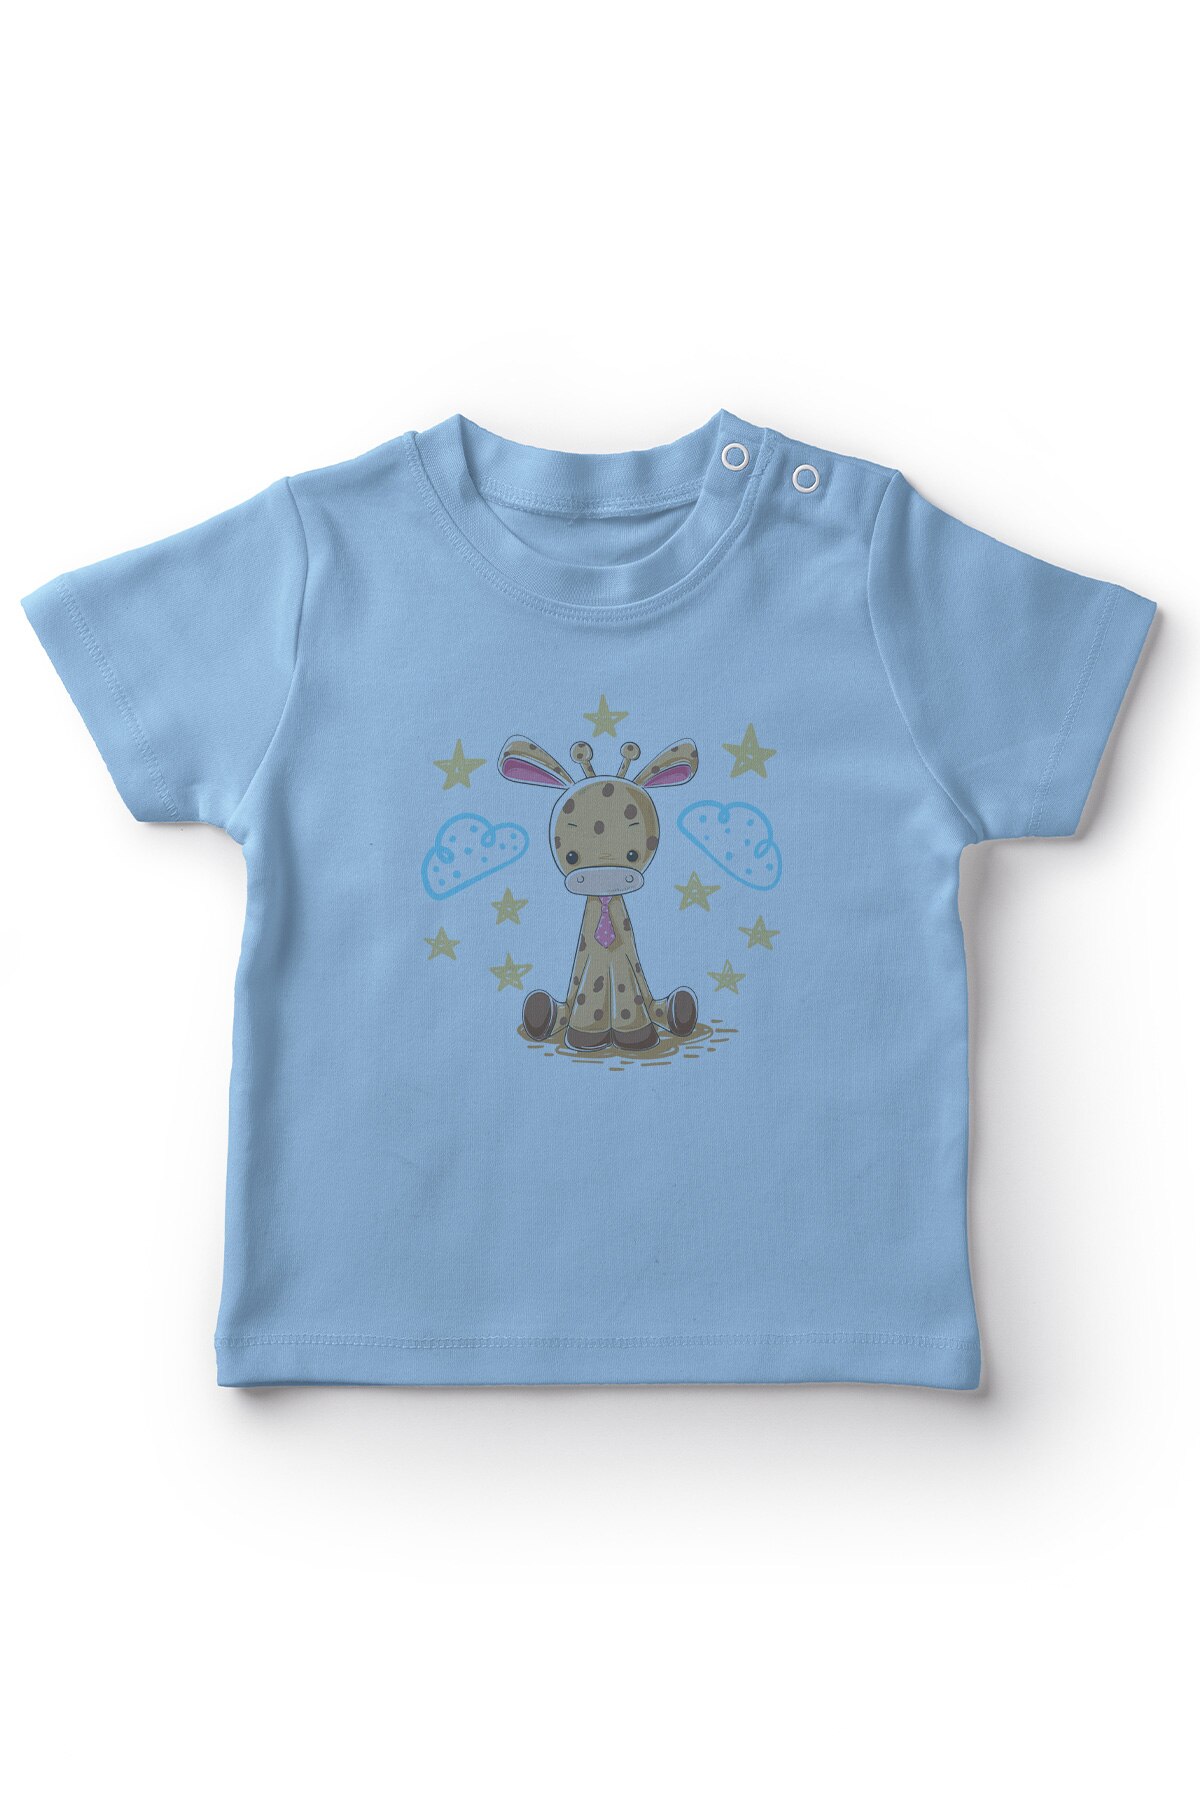 Angemiel Baby Nacht Zitten Met Tie Giraffe Jongens Baby T-shirt Blauw